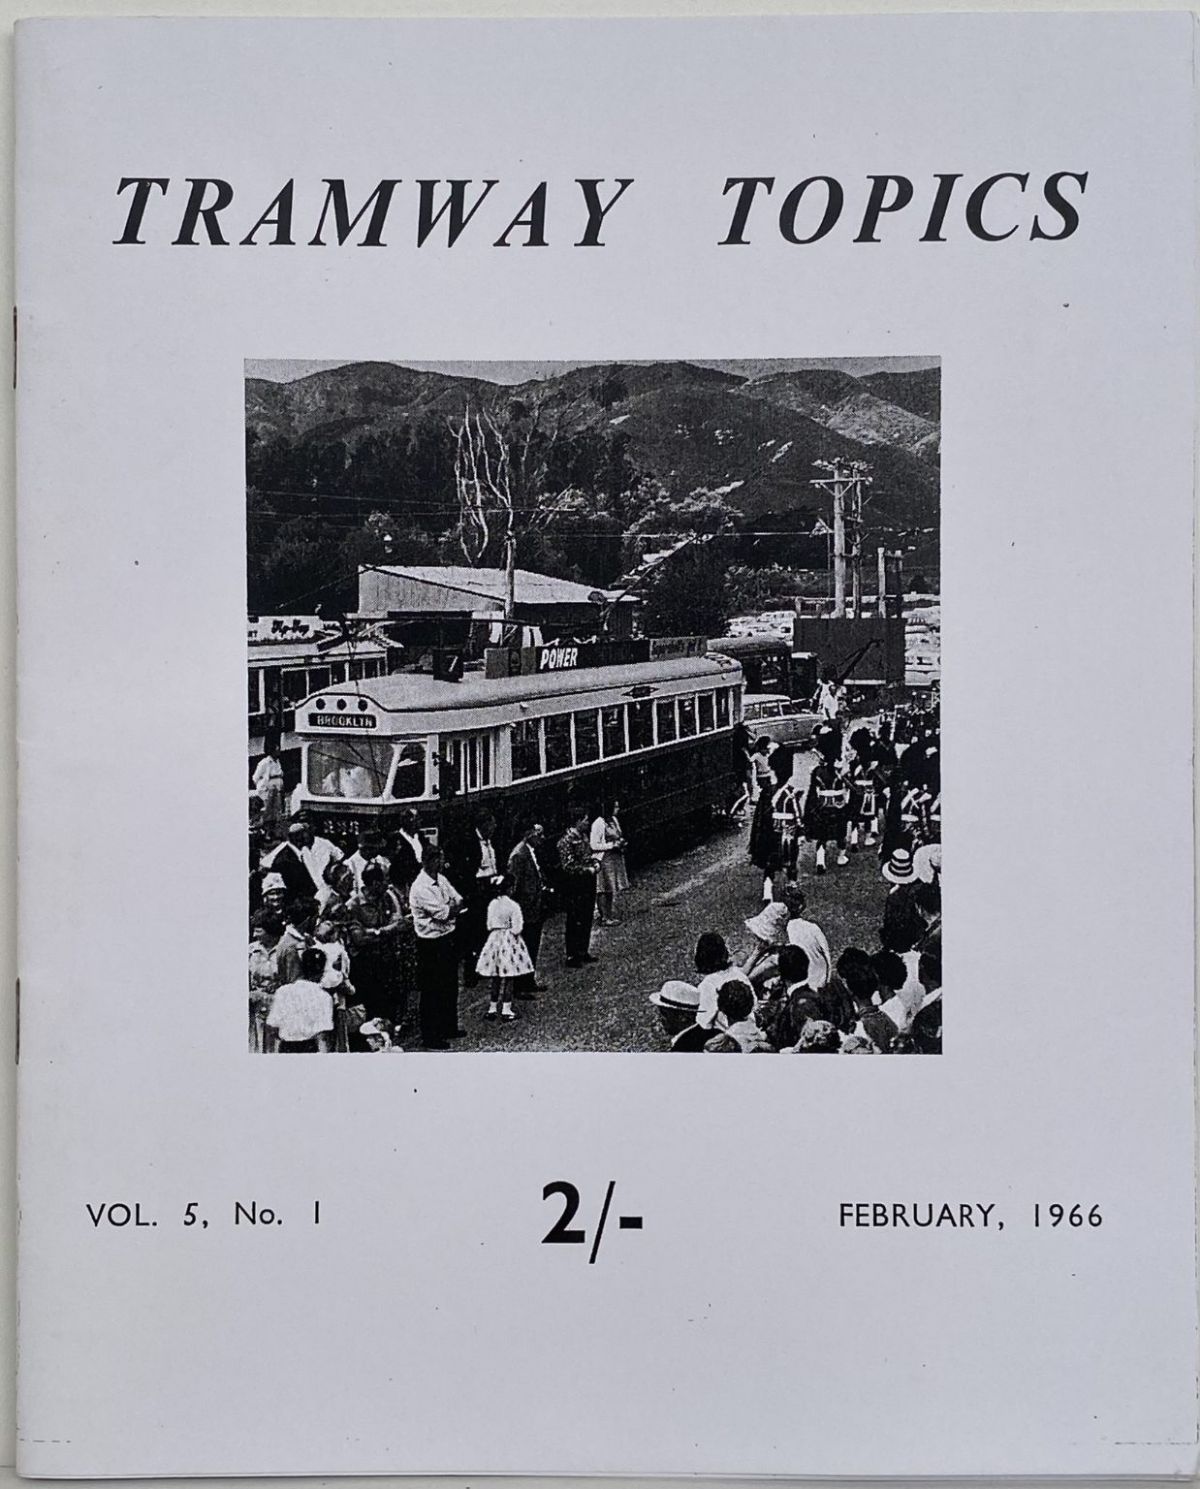 TRAMWAY TOPICS Vol 5, No 1, February 1966